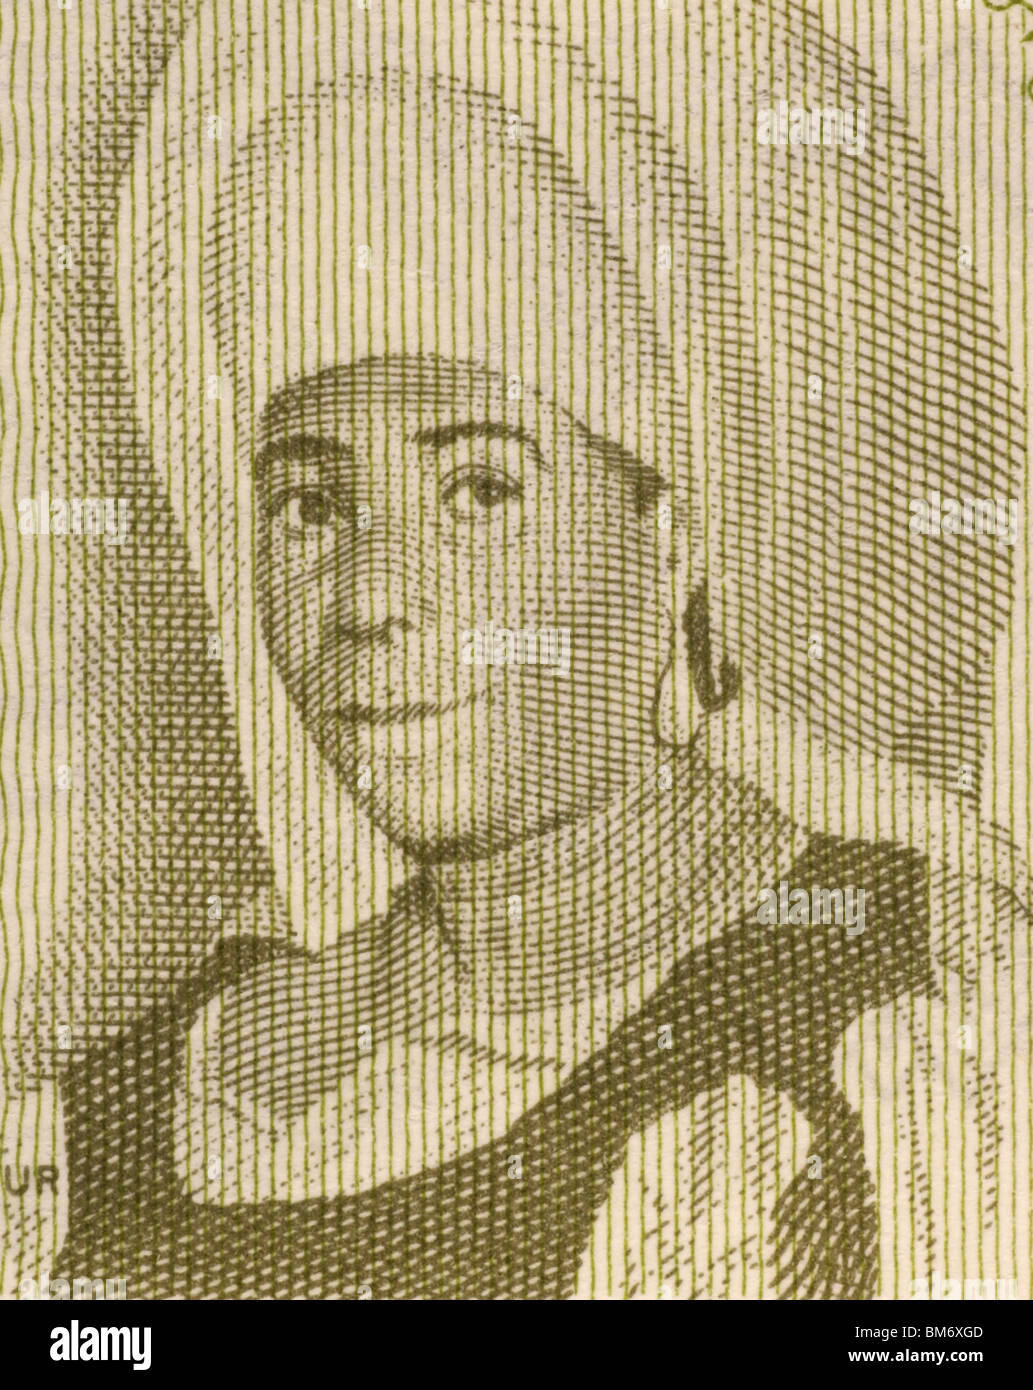 Mafori Bangoura (1912-1994) on 1 Syli 1981 Banknote from Guinea. Stock Photo